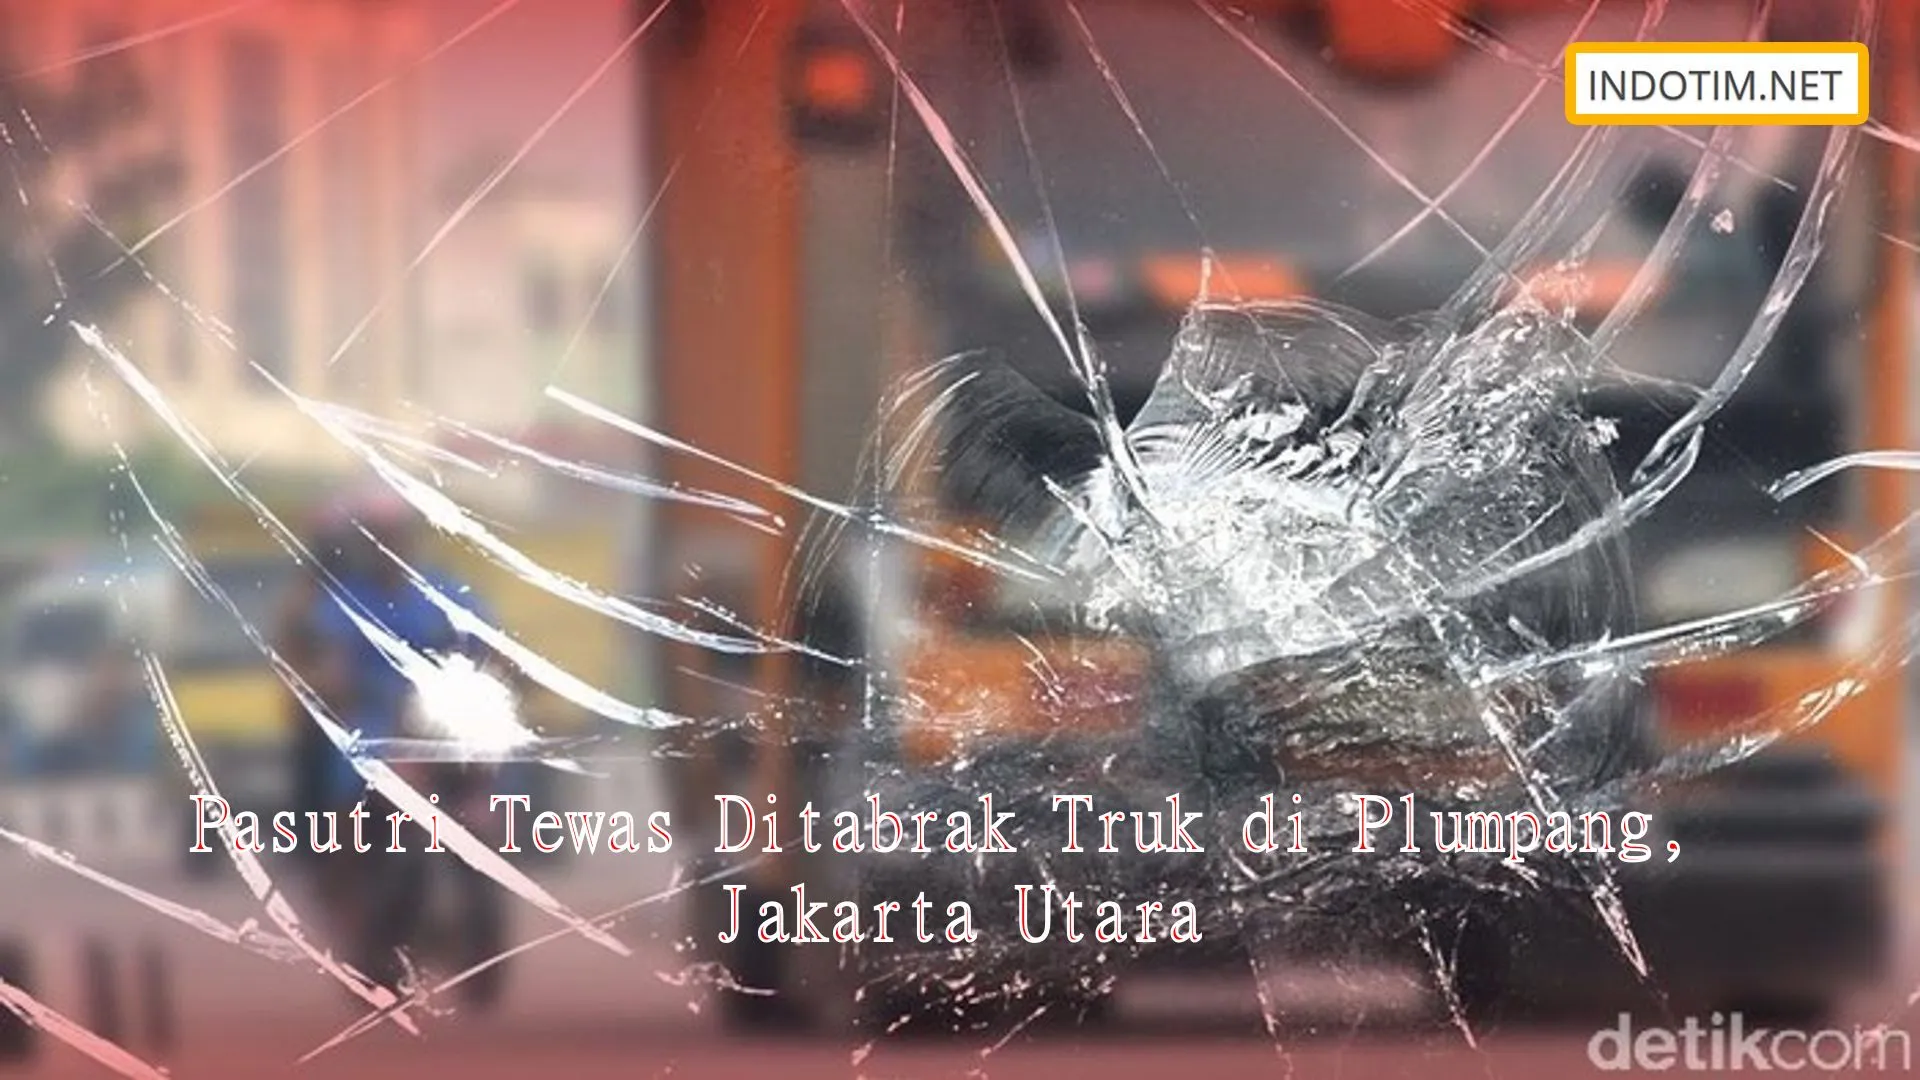 Pasutri Tewas Ditabrak Truk di Plumpang, Jakarta Utara